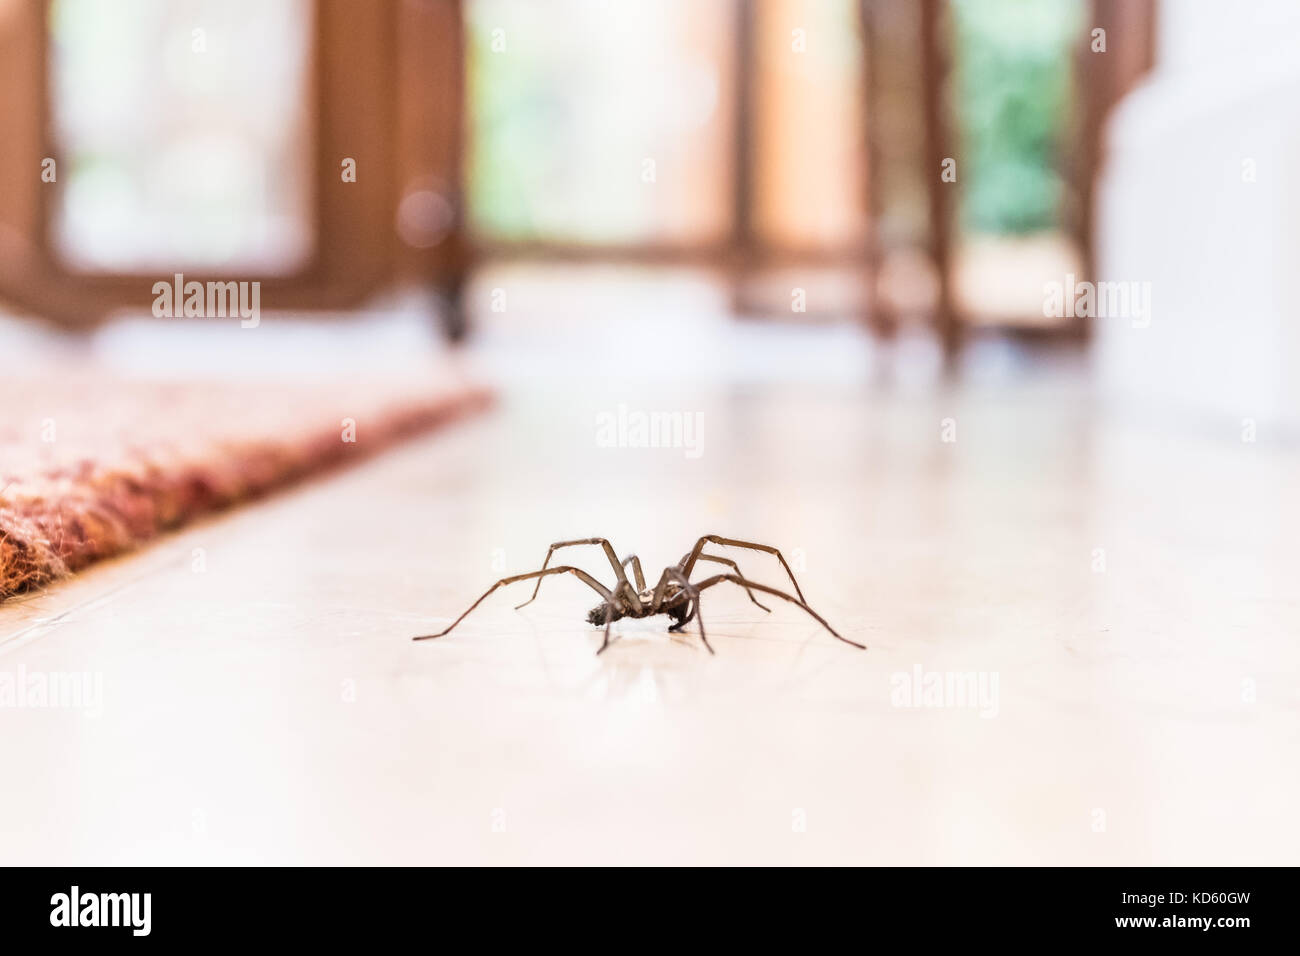 Gemeinsame Haus Spinne auf einer glatten Fliesen vom Boden in einer Küche in einem Wohnhaus gesehen Stockfoto